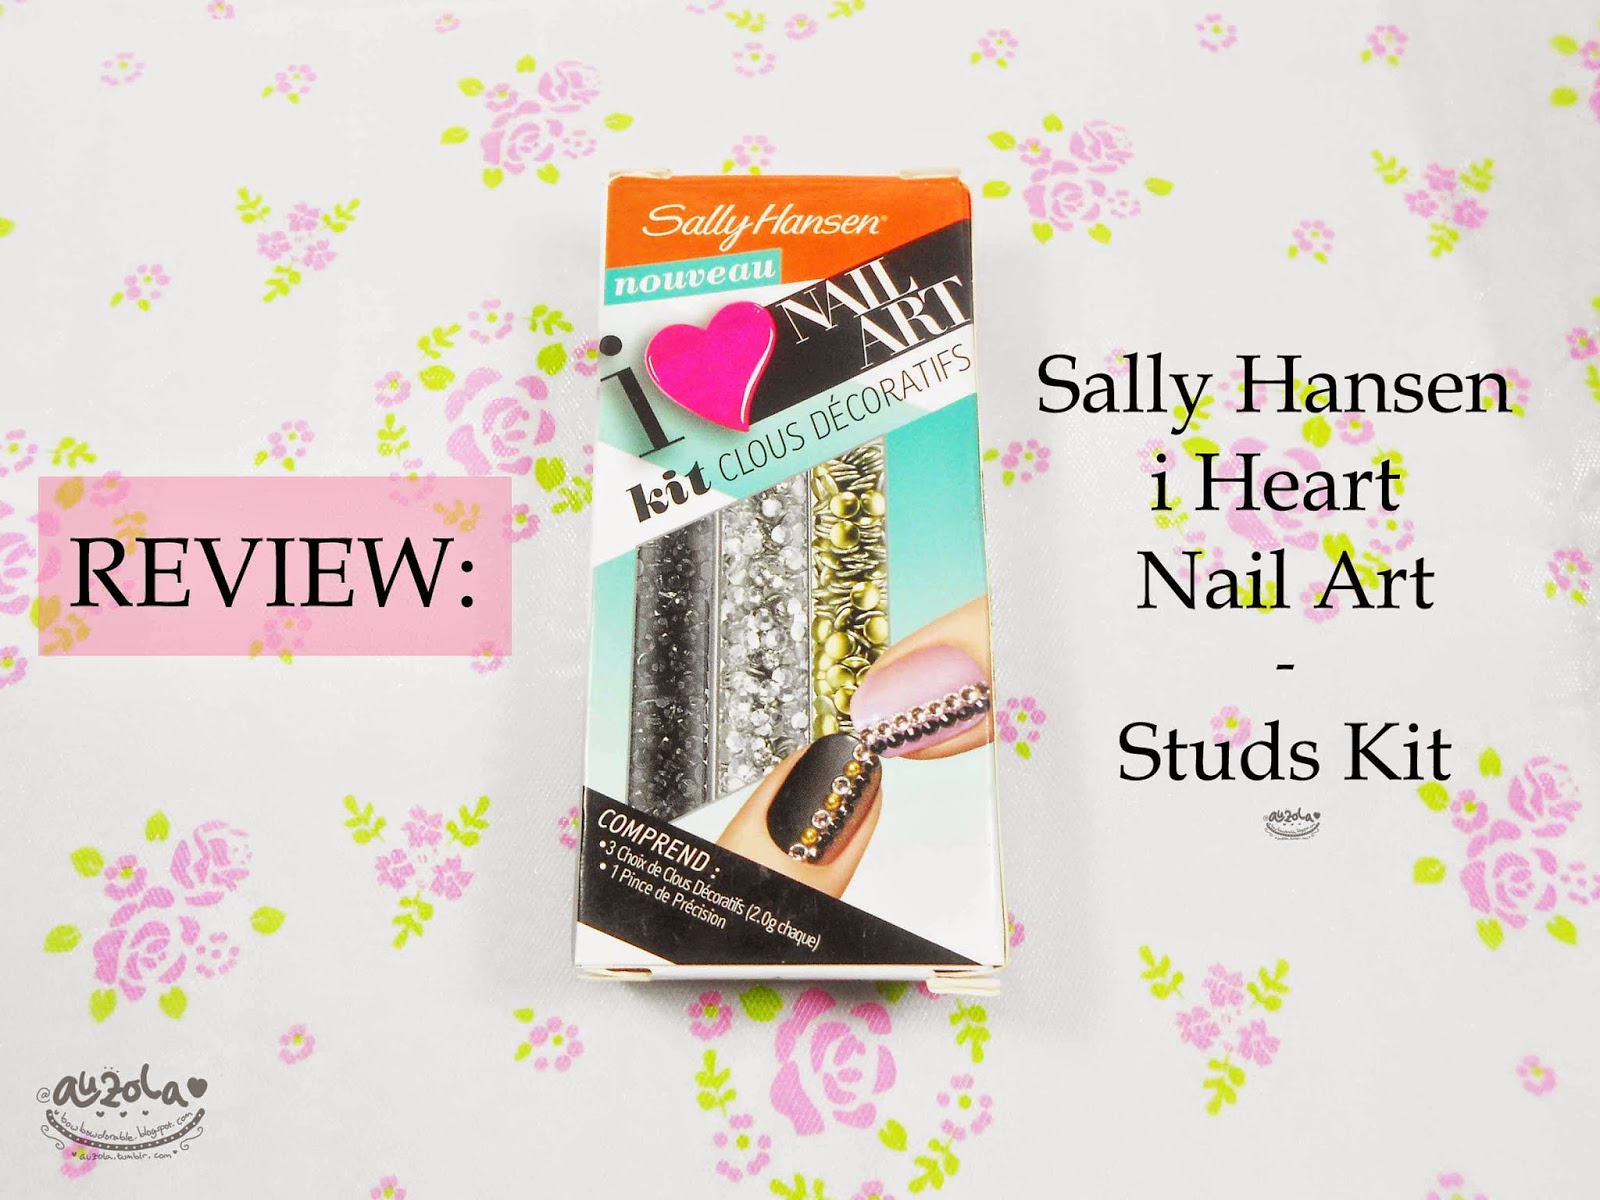 2. Sally Hansen Nail Art Tool Kit - wide 5